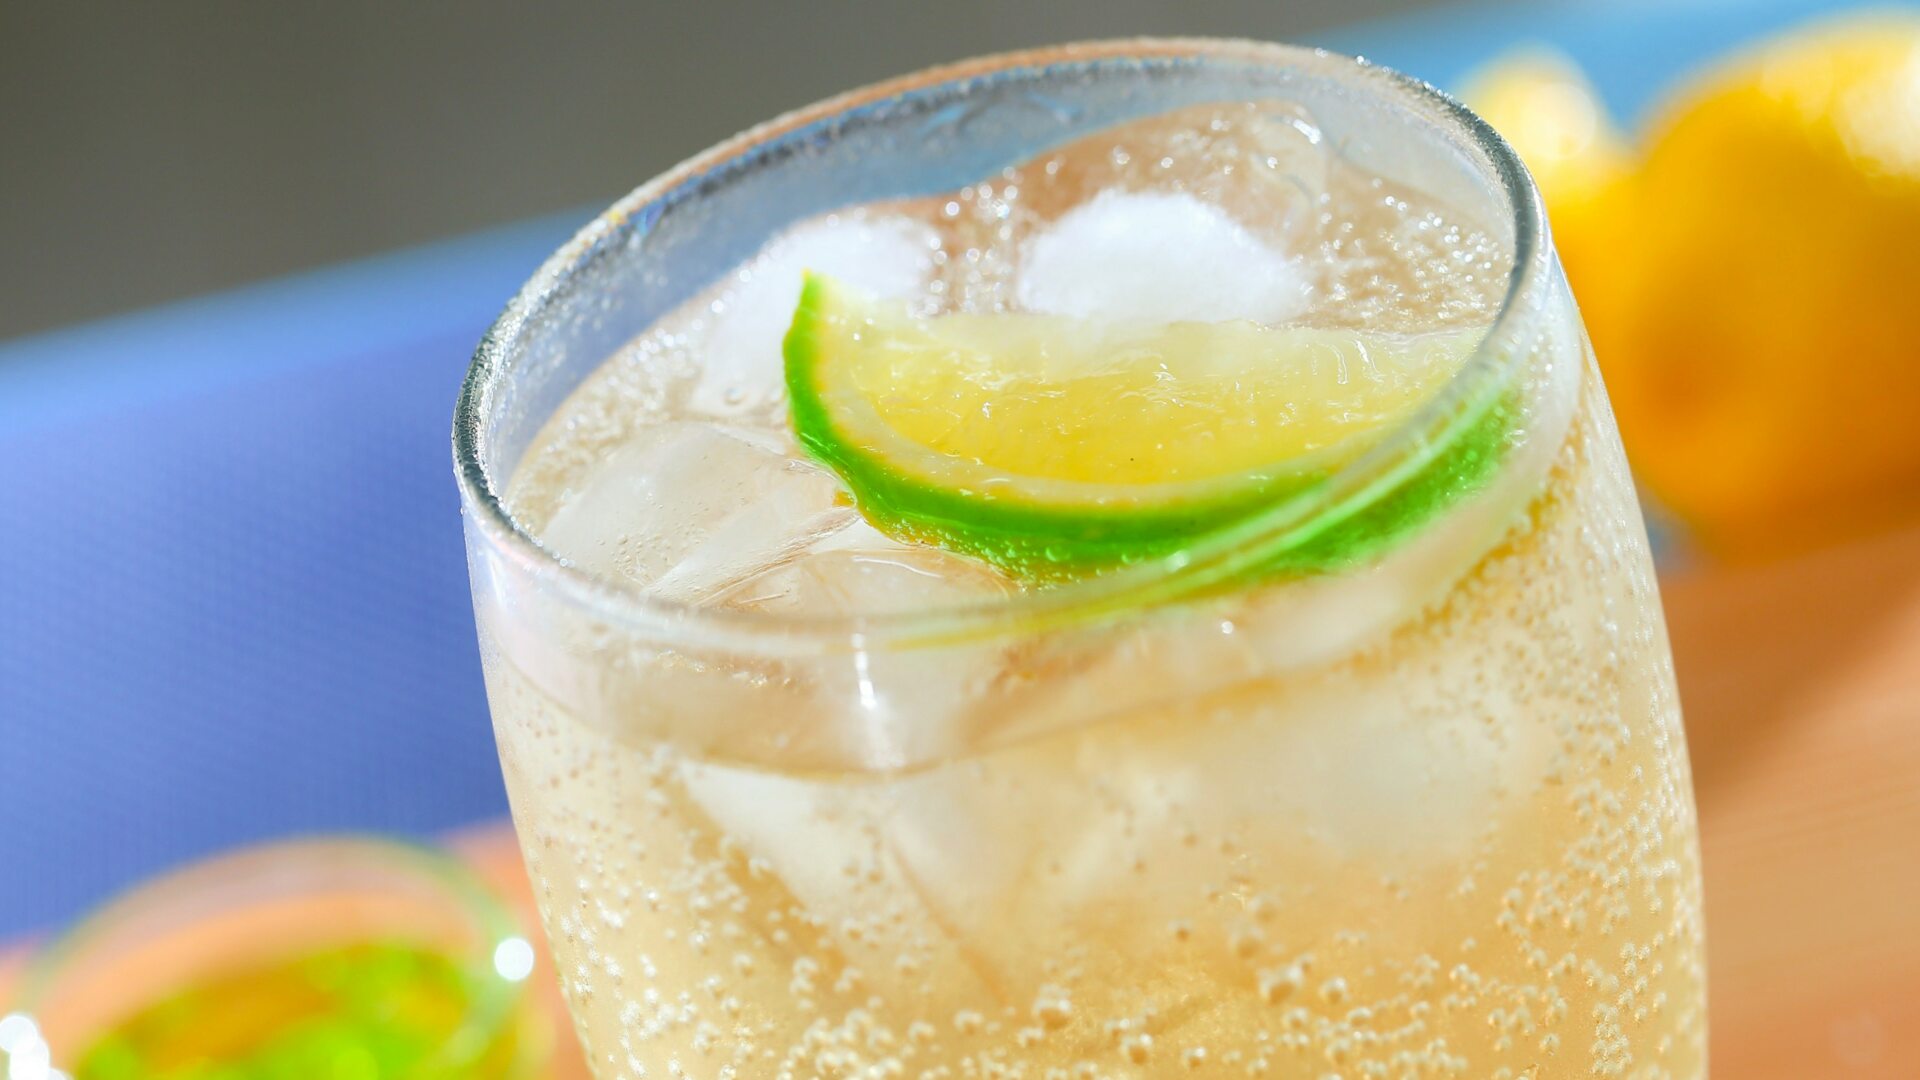 photo d'un verre glacé contenant un ginger ale, des glaçons et une rondelle de citron vert